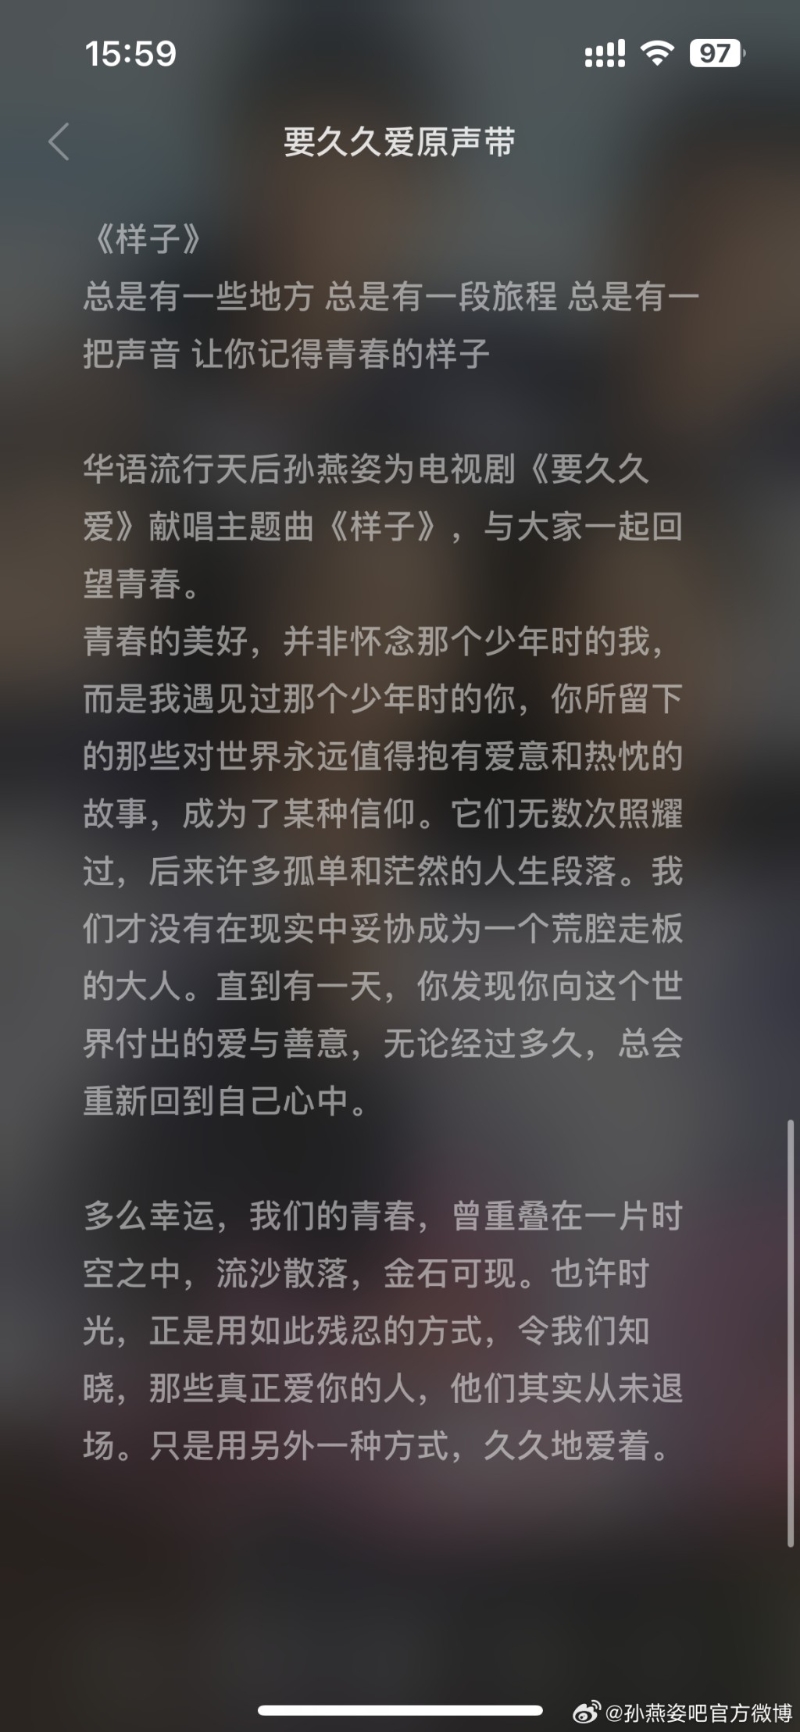 孙燕姿的新歌《样子》歌词，被网民联想到与姊妹决裂有关。